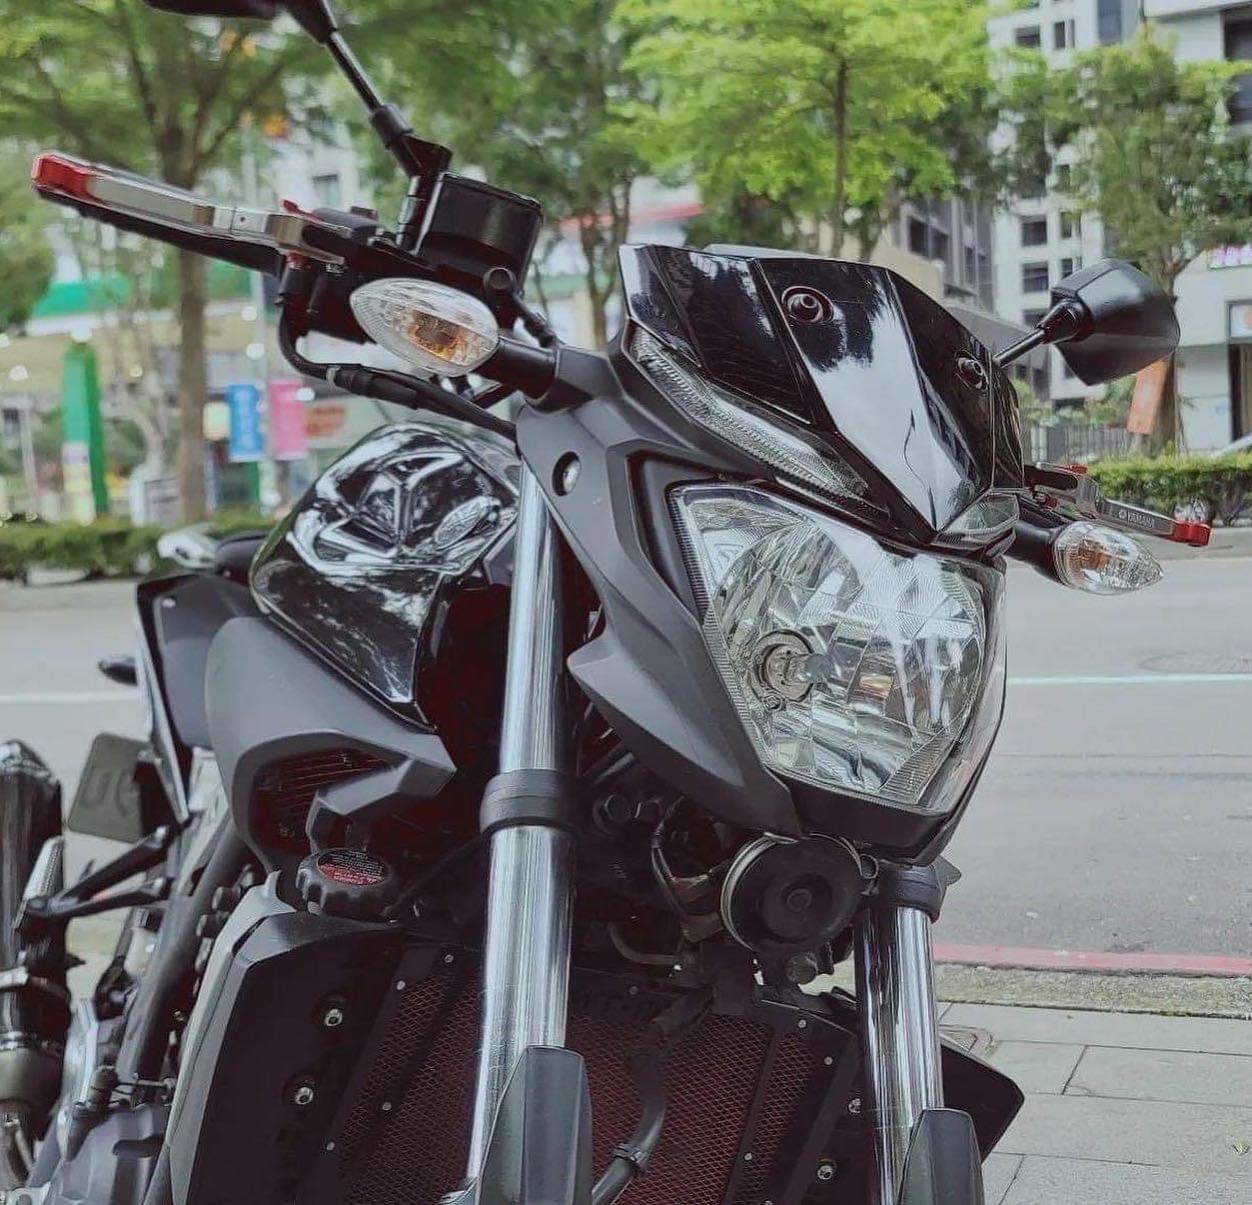 YAMAHA MT-03 - 中古/二手車出售中 Yamaha MT03 視訊賞車無壓力 臉書IG:小資族二手重機買賣 | 小資族二手重機買賣